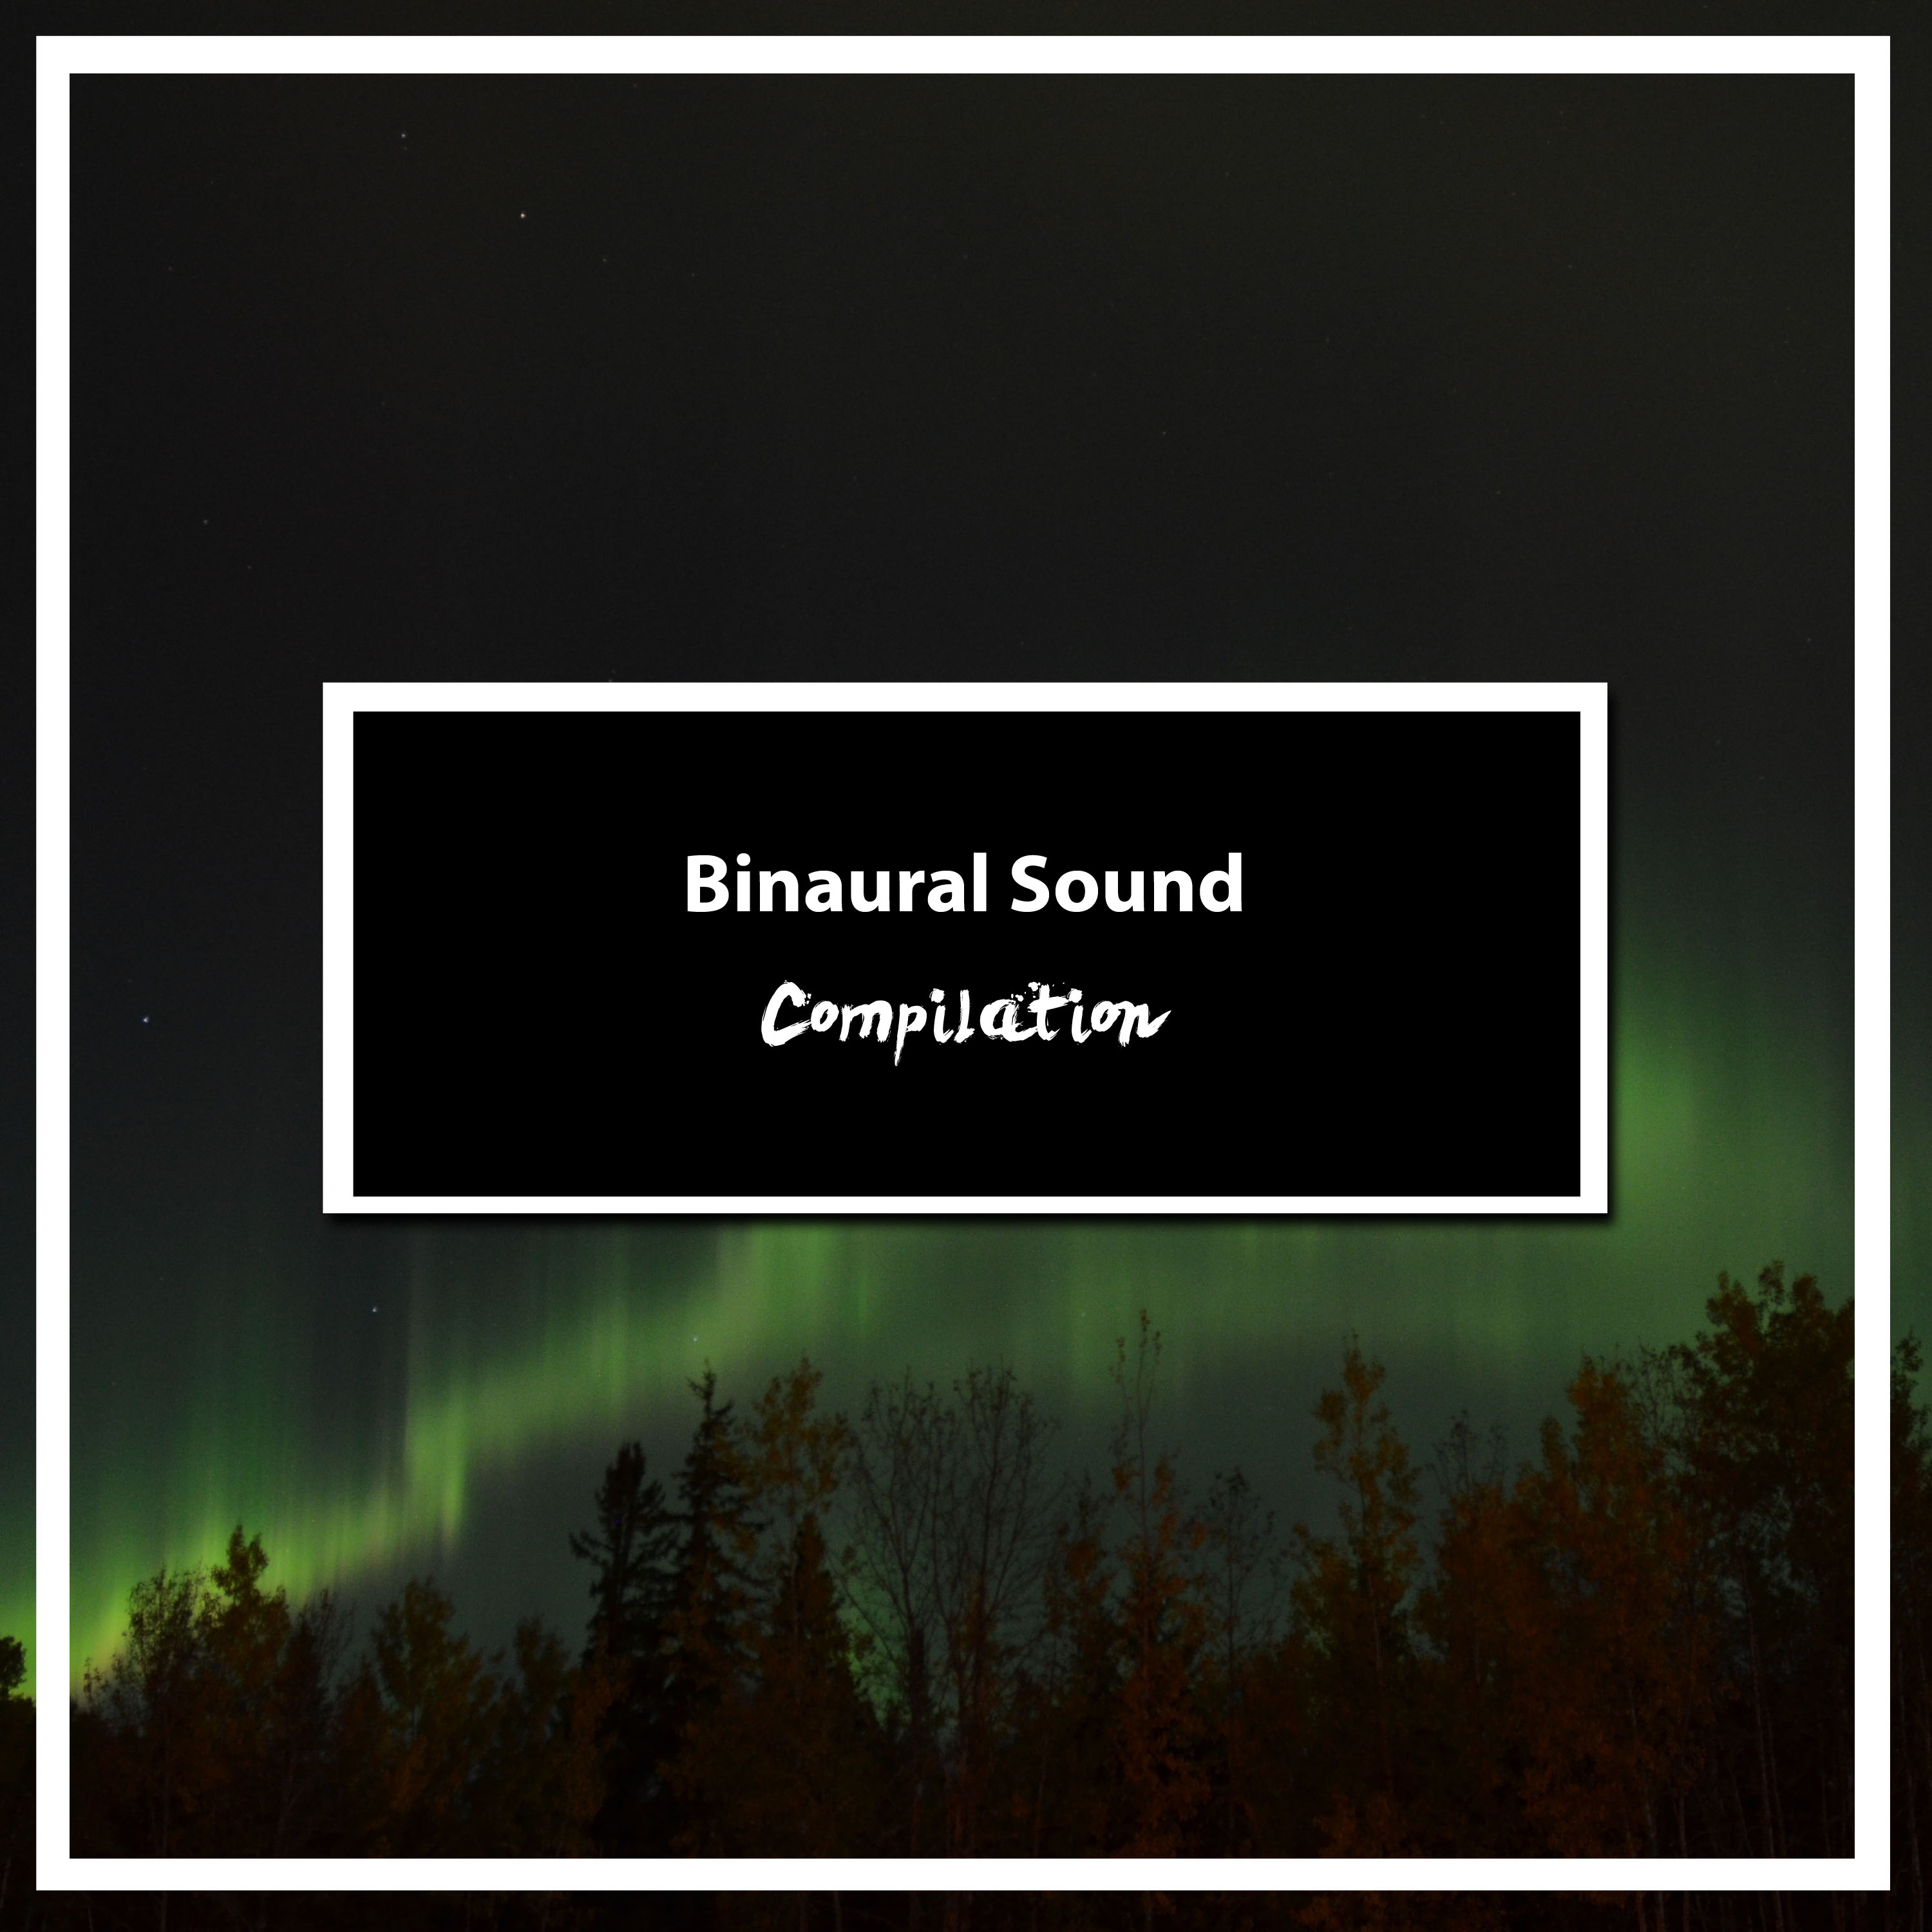 2018 A Binaural Sound Comilation